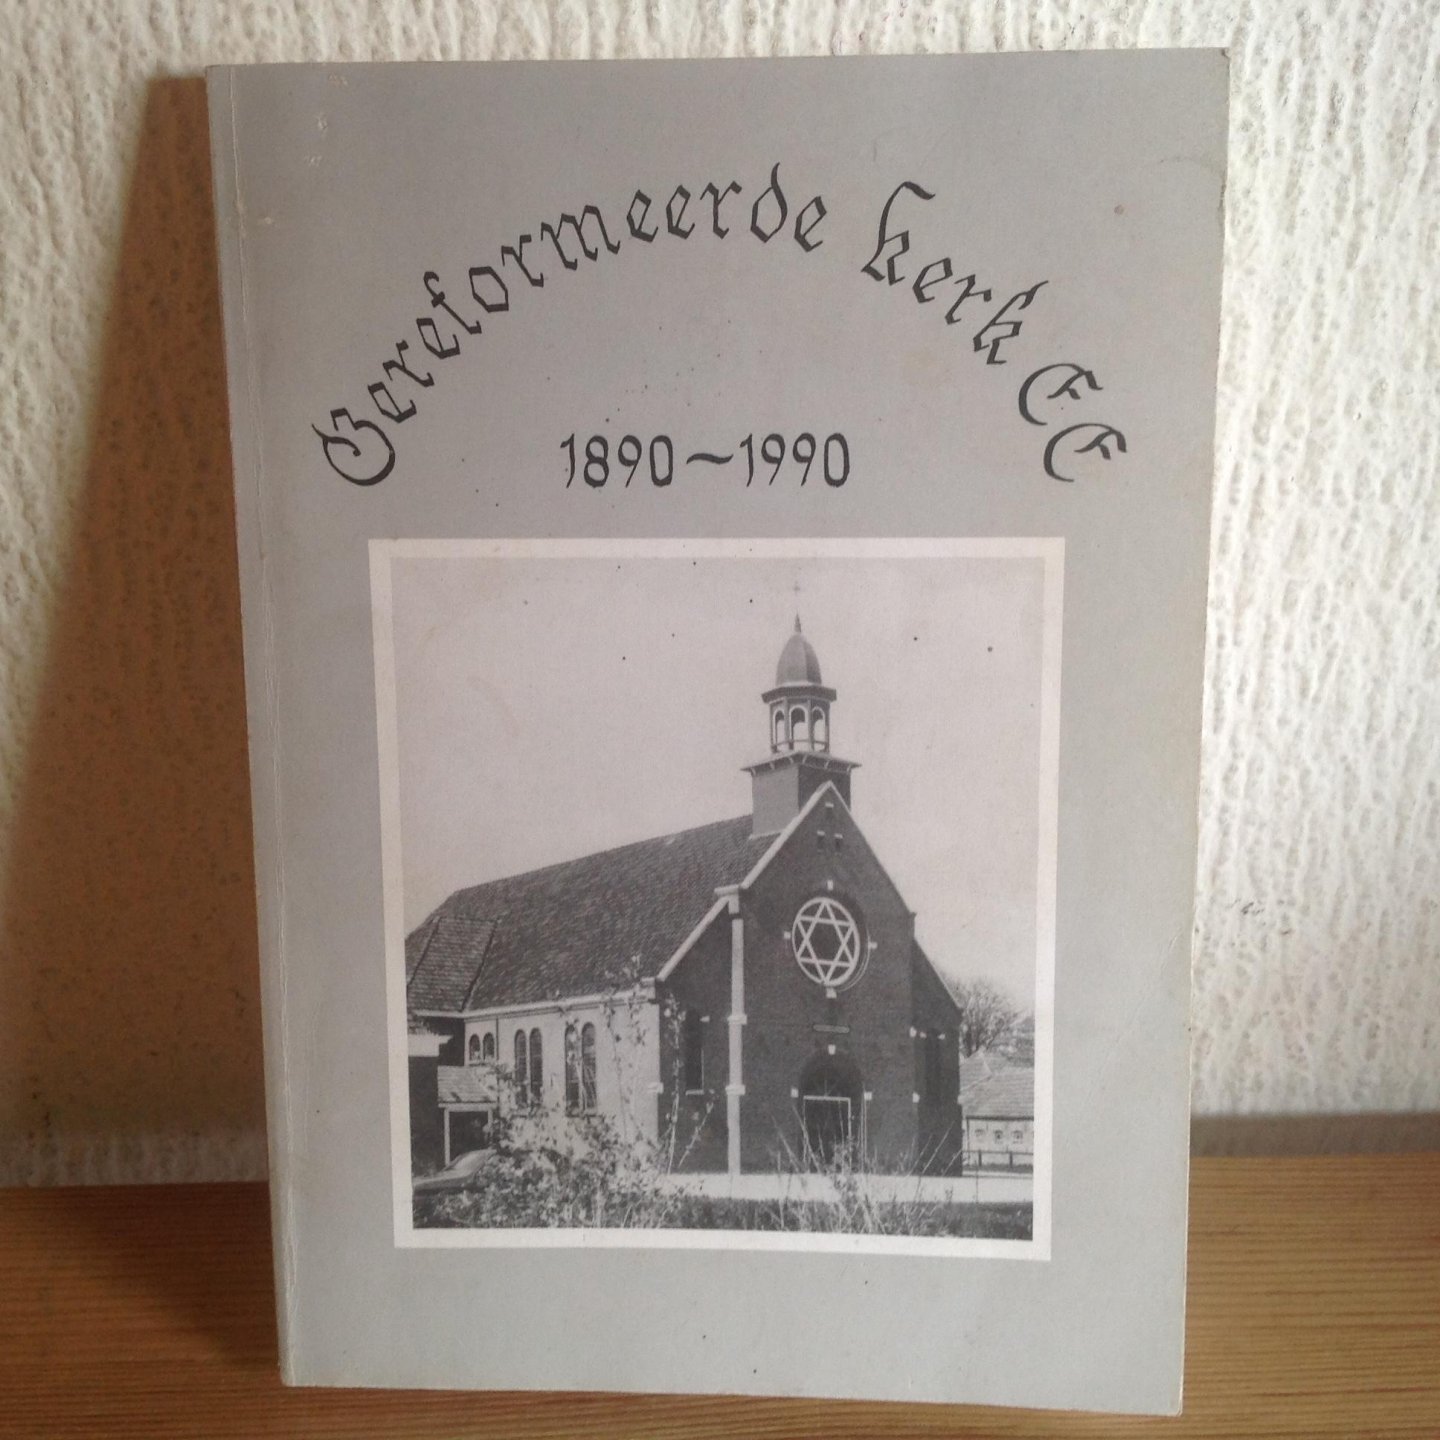  - Gereformeerde kerk EE 1890-1990